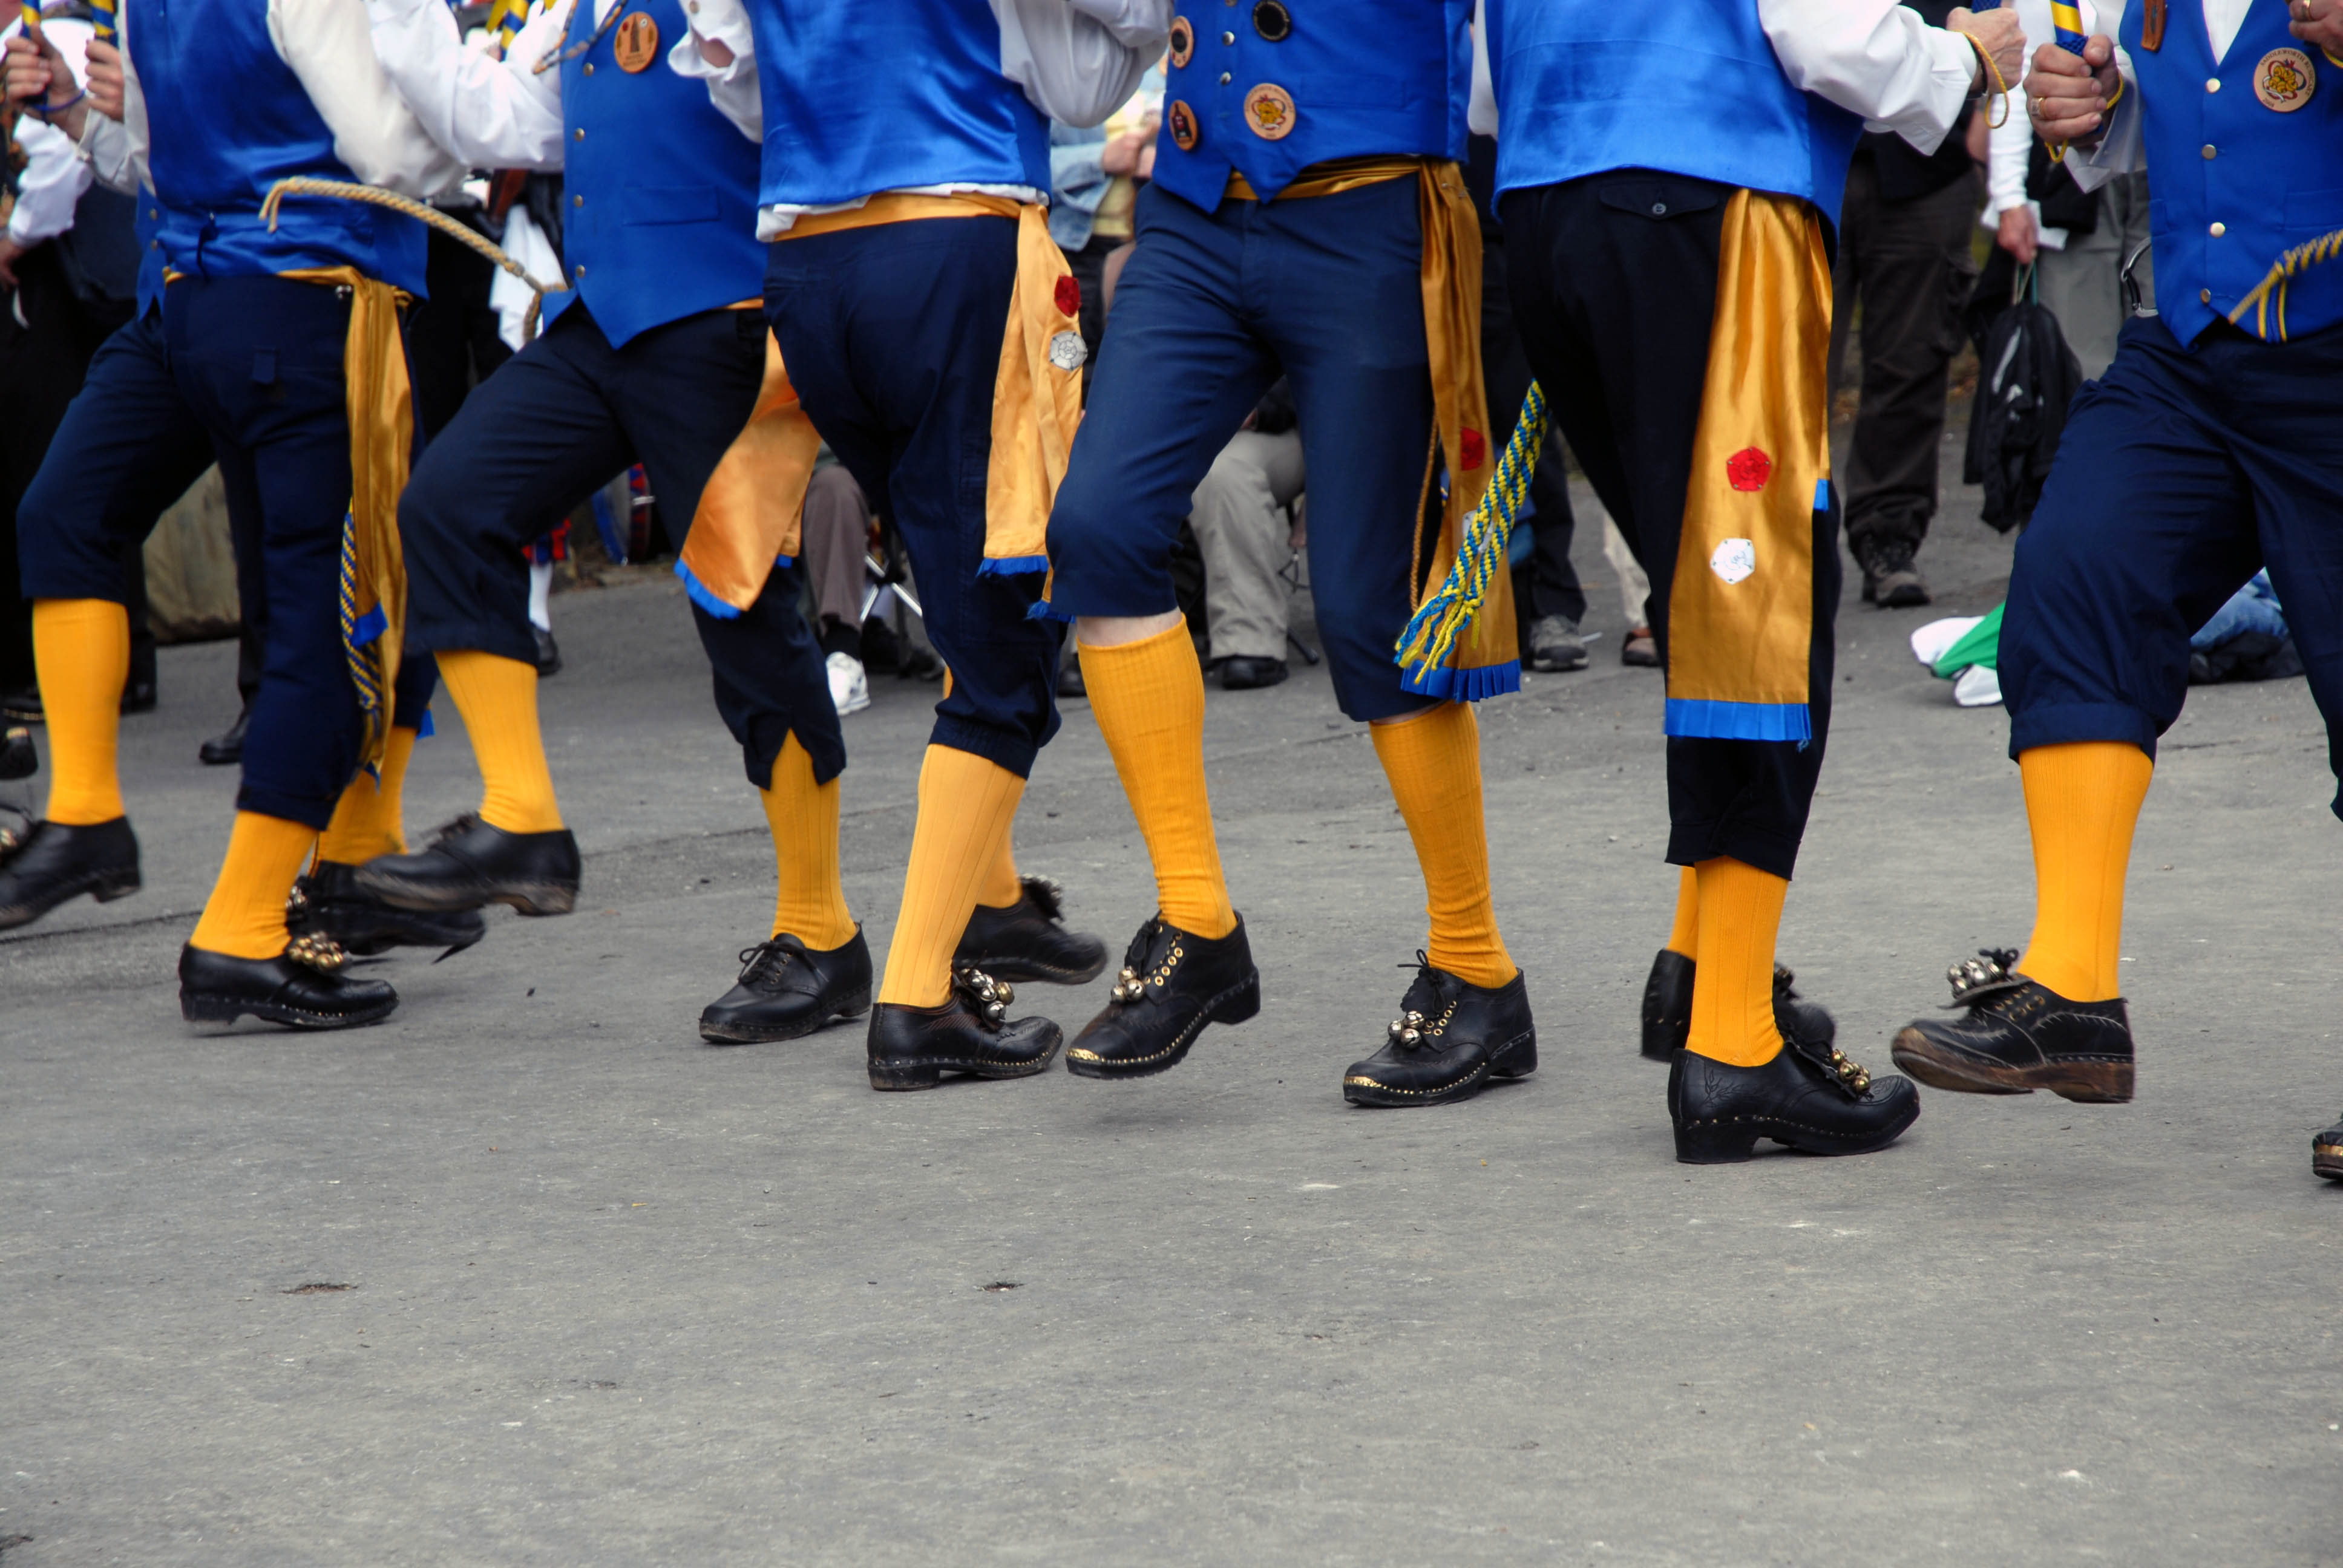 The Feet of the Morris Men Dancers